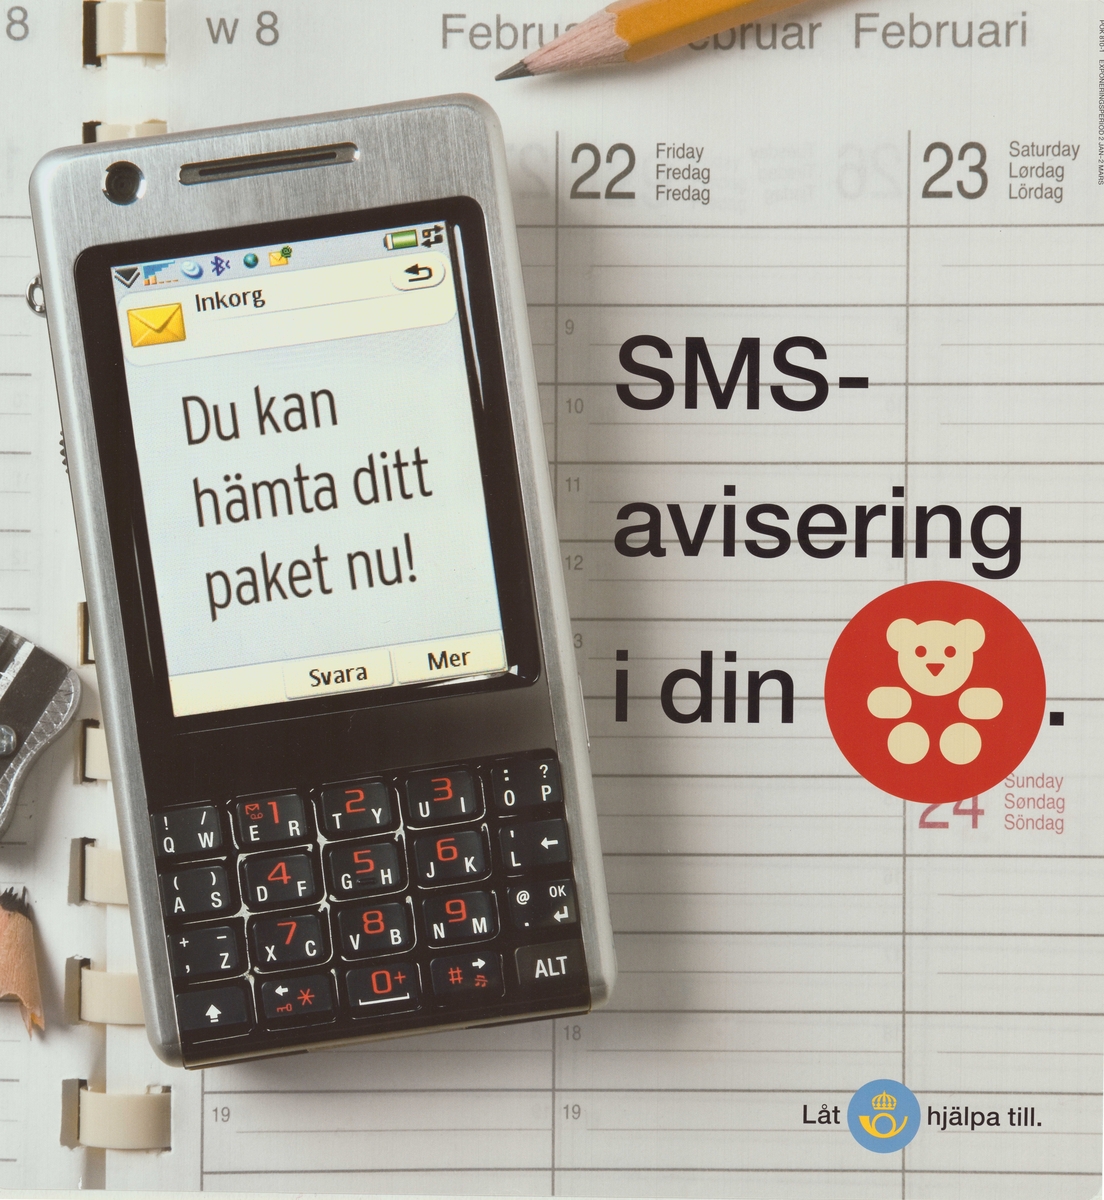 Mobiltelefon med text om SMS-avsiering av paket.

Postens ikonspråk.